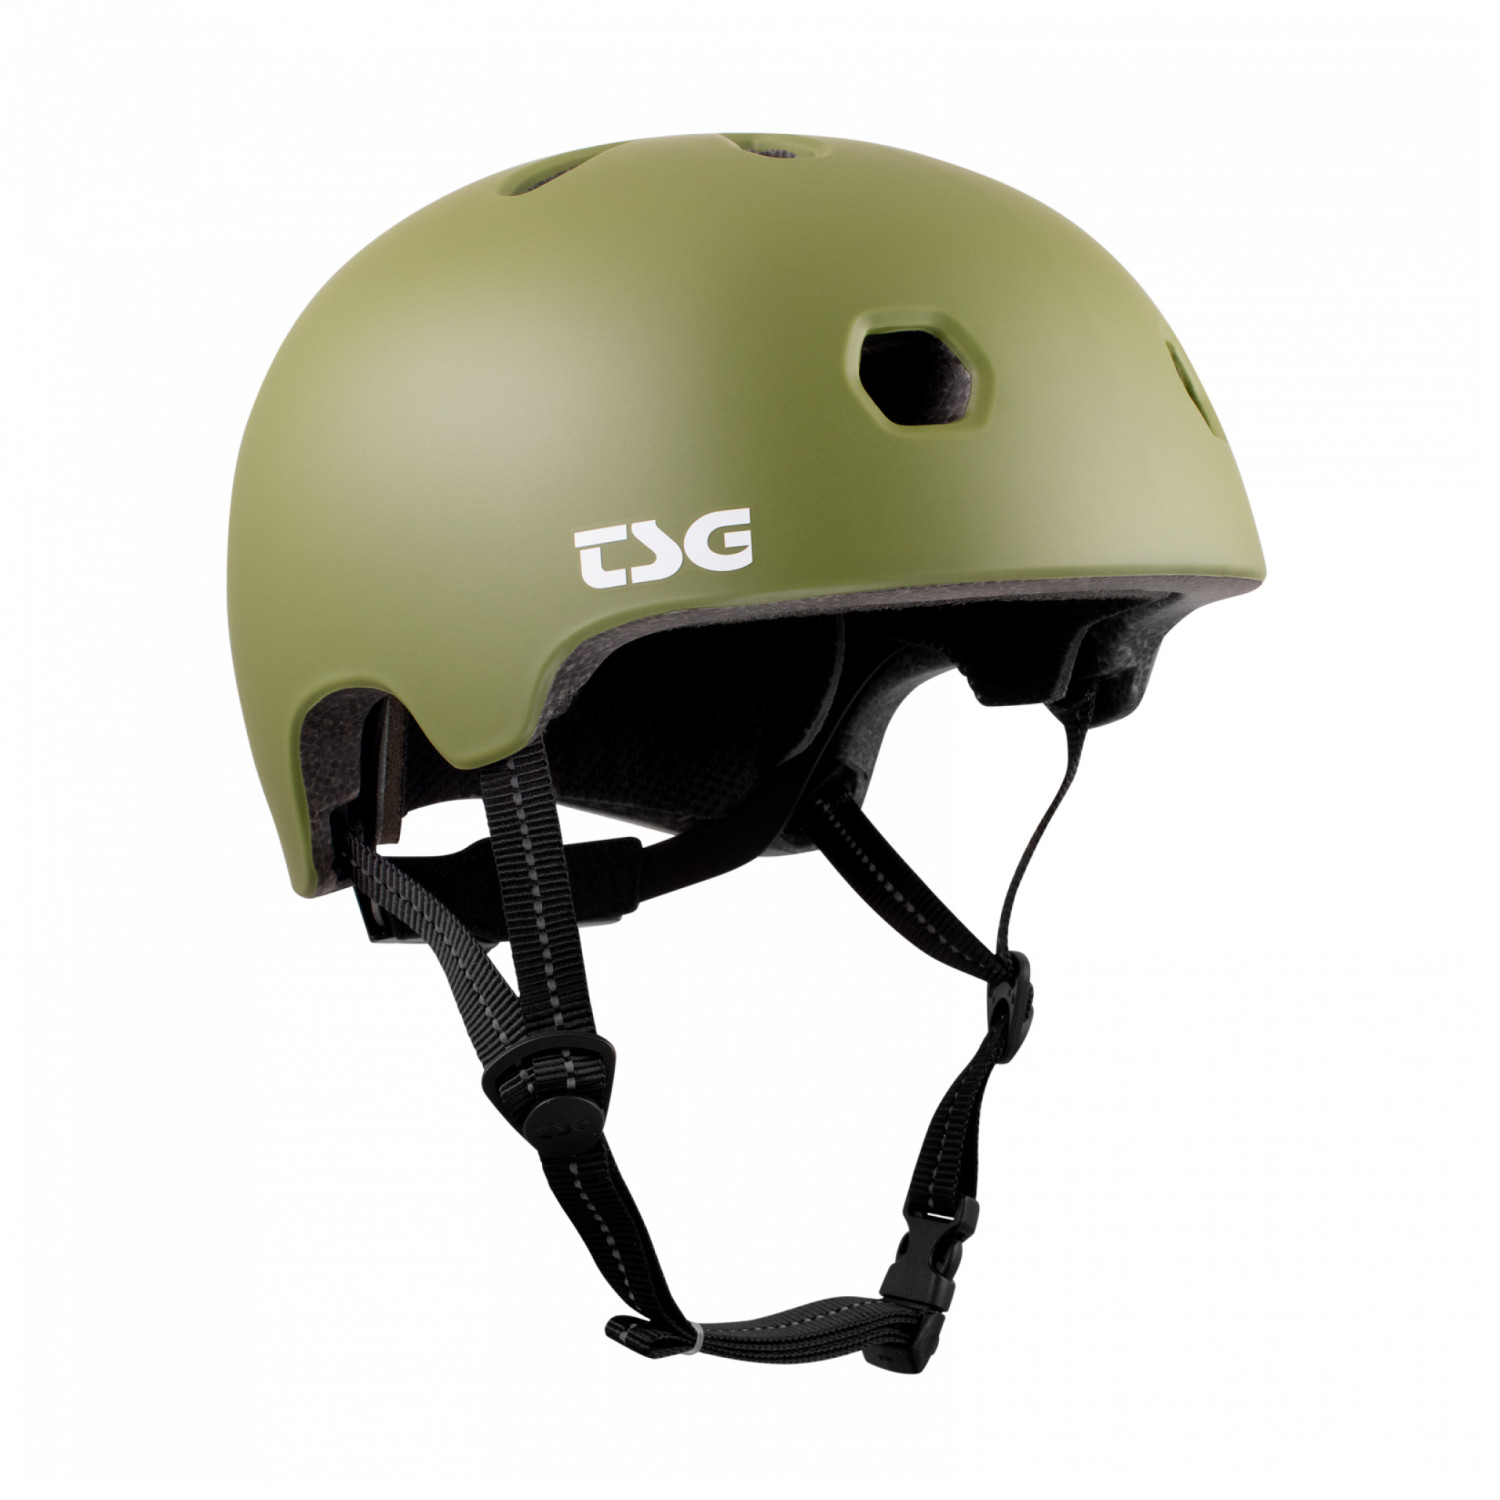 Велосипедный шлем Tsg Meta Solid Color, цвет Satin Olive